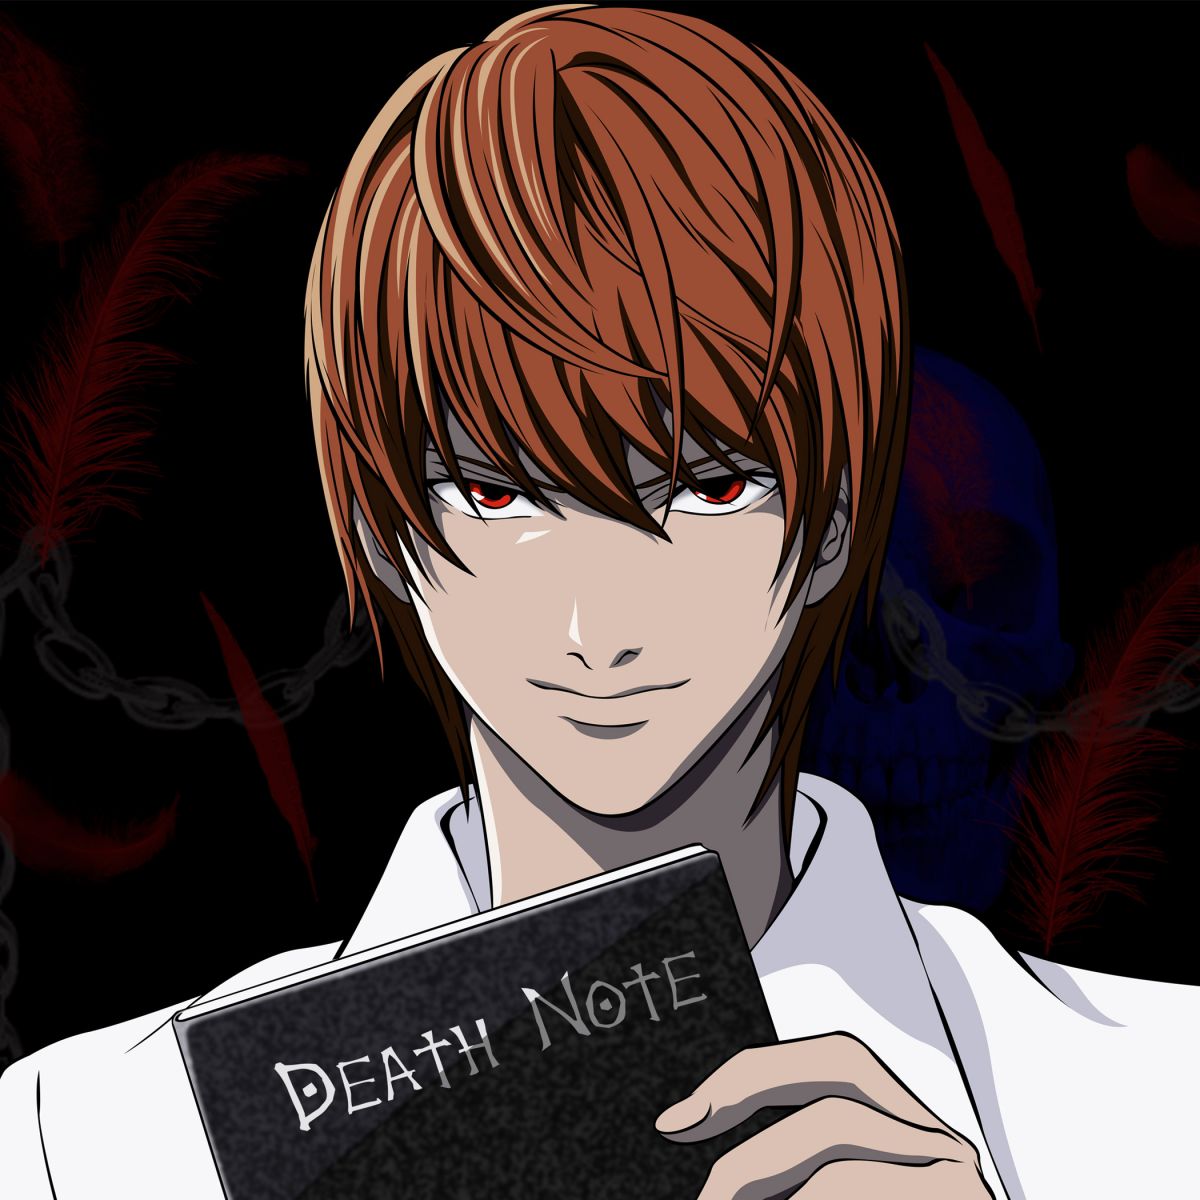 Death Note, Netflix uyarlaması olarak geliyor